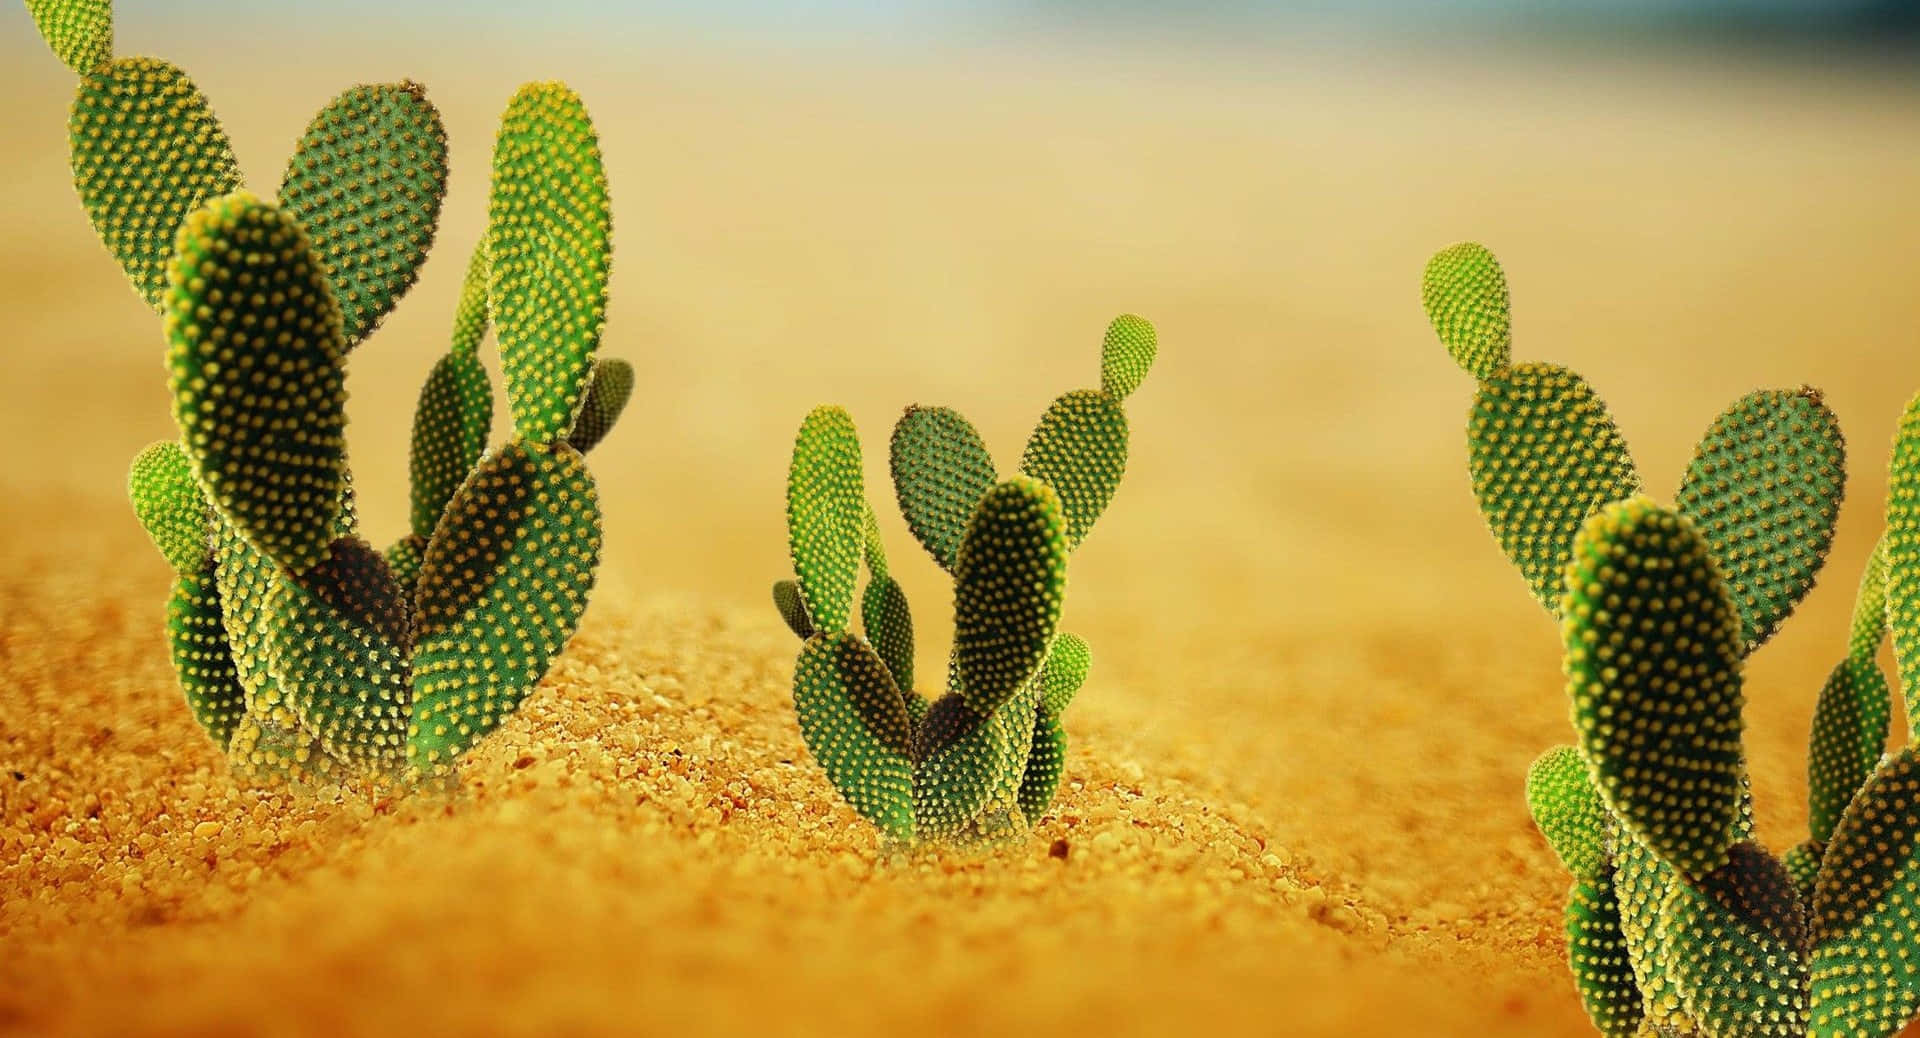 Imagende Un Lindo Cactus Con Orejas De Conejo